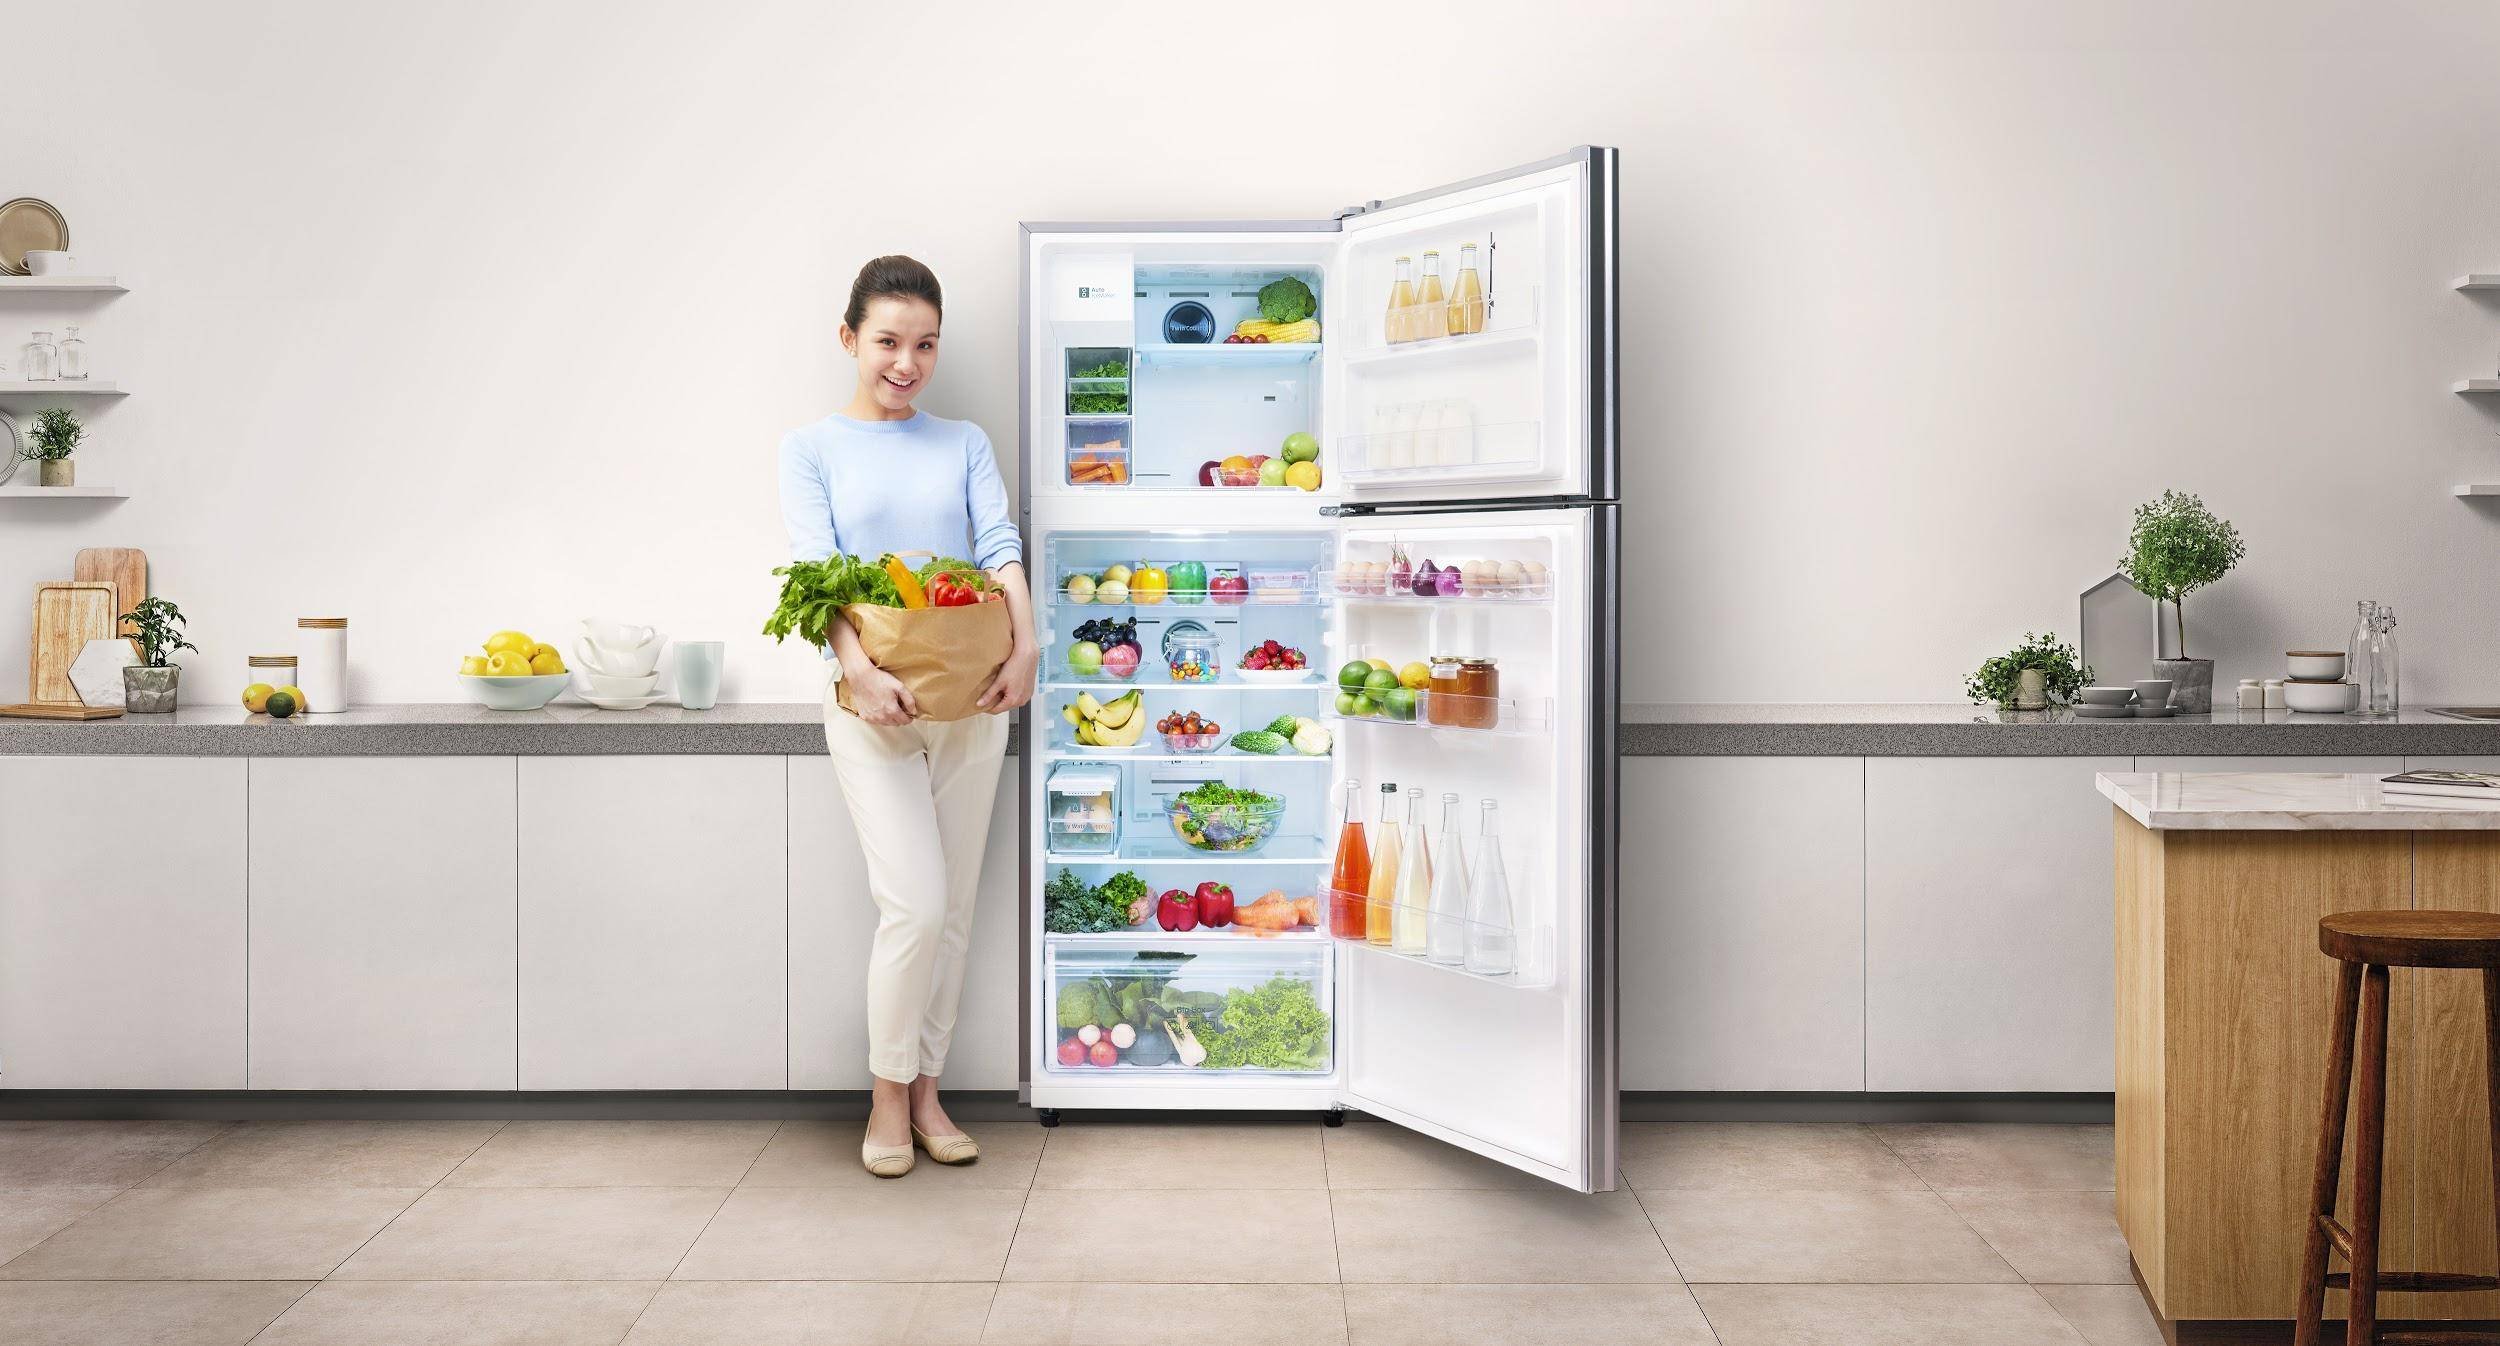 Надежный качественный холодильник. Холодильник Samsung rsh7unbp. Фон кухня холодильник. Реклама холодильника. Огромный холодильник для дома.